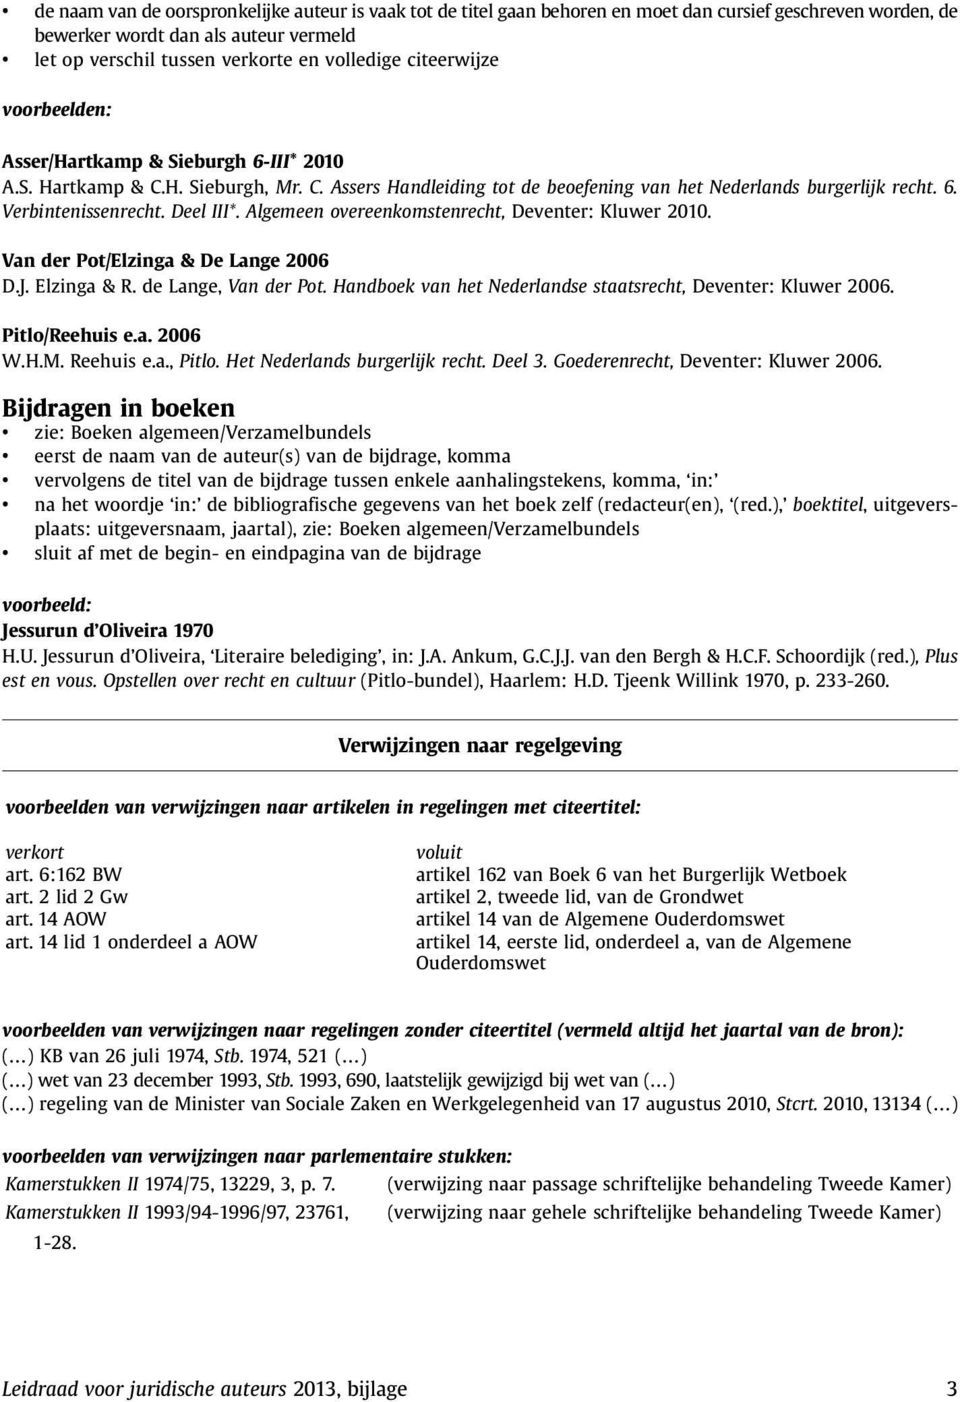 Algemeen overeenkomstenrecht, Deventer: Kluwer 2010. Van der Pot/Elzinga & De Lange 2006 D.J. Elzinga & R. de Lange, Van der Pot. Handboek van het Nederlandse staatsrecht, Deventer: Kluwer 2006.